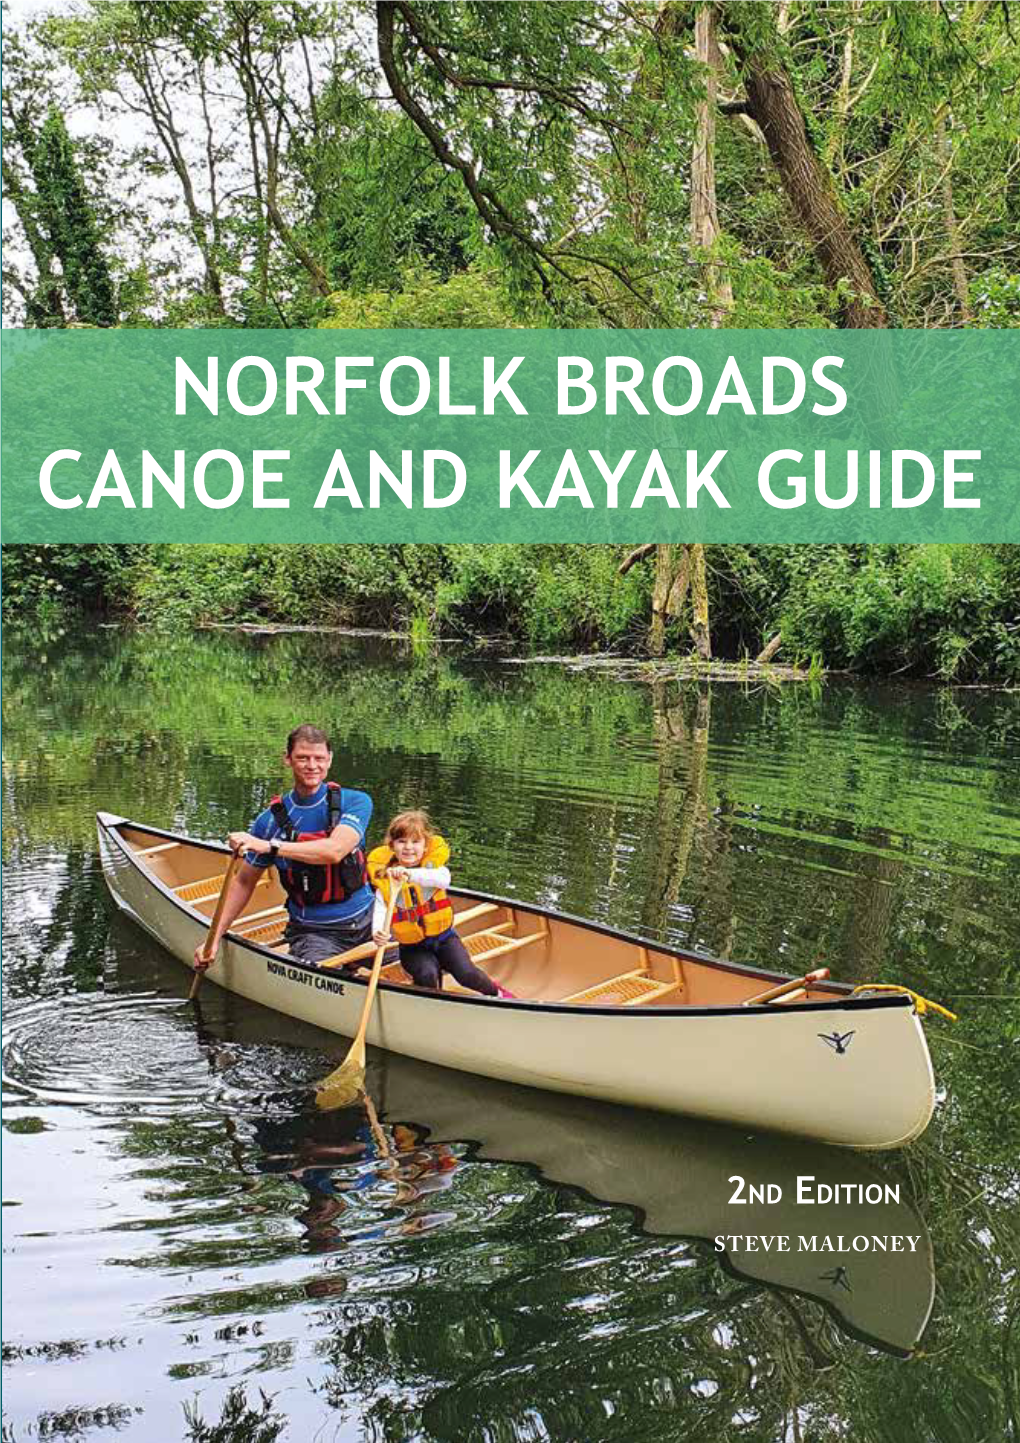 NORFOLK BROADS CANOE and Kayak Guide Y AK GUI DE NORFOLK BROADS CANOE and KAYAK GUIDE